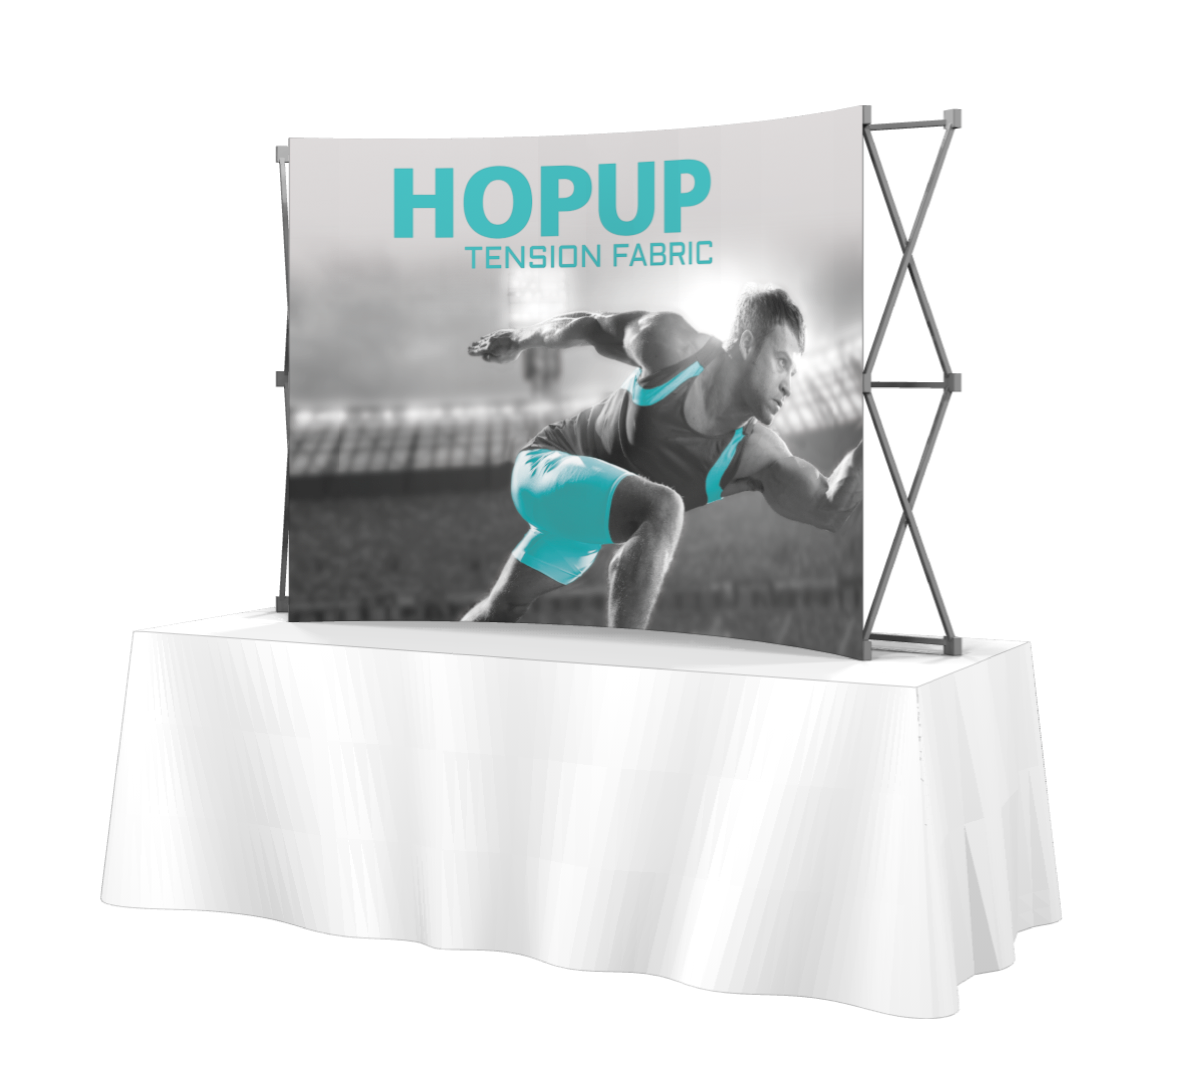 HopUp 3x2 Tabletop Tension Fabric Display- No Endcaps